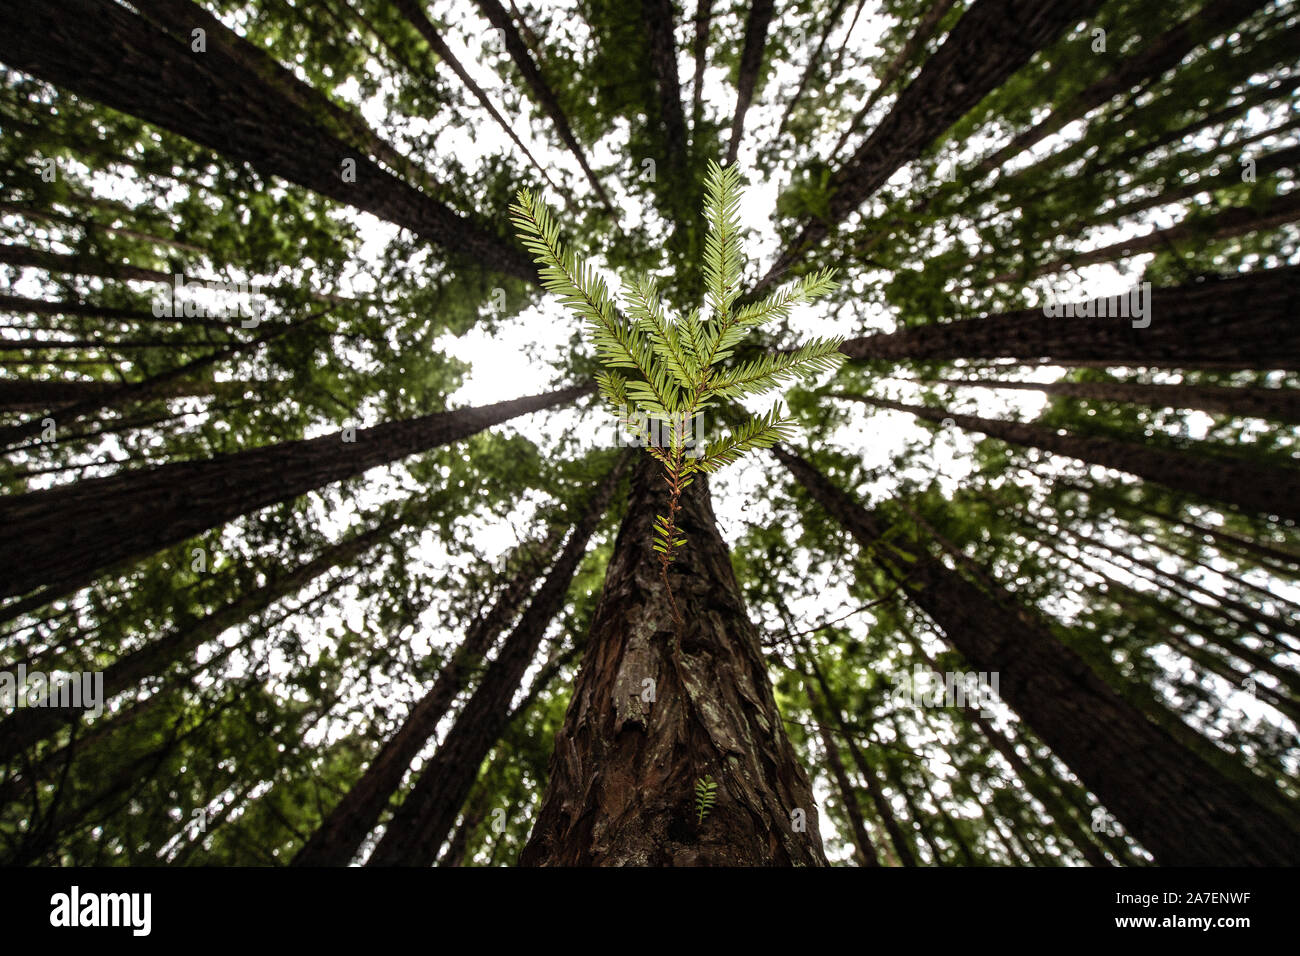 Albero della vita: la nuova crescita sul tronco di un albero di sequoia nella Foresta di Redwood appena fuori da Melbourne in Australia. Foto Stock